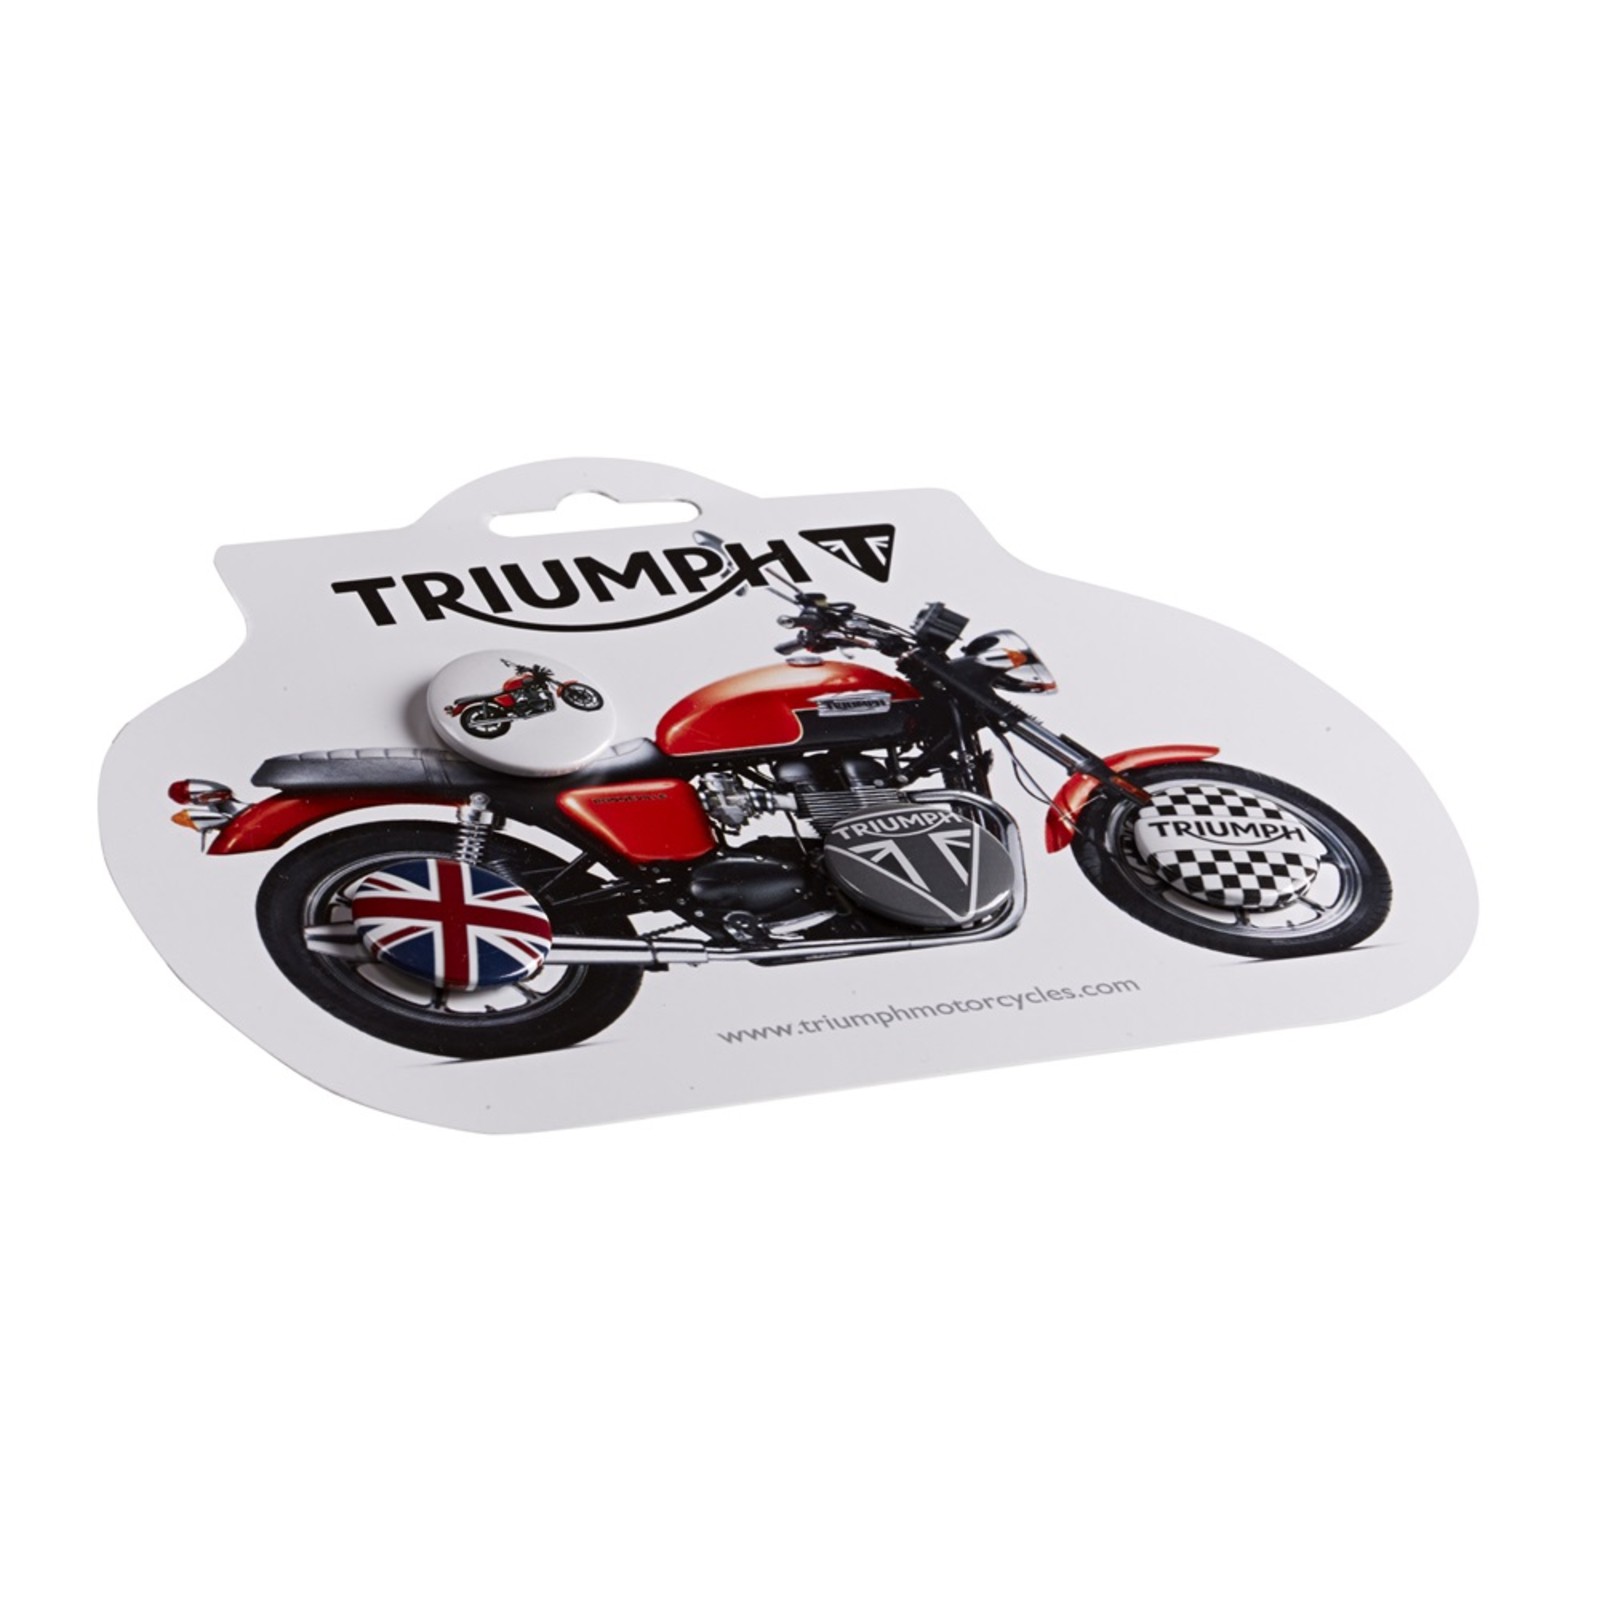 TRIUMPH Motorrad Anstecker NEU 